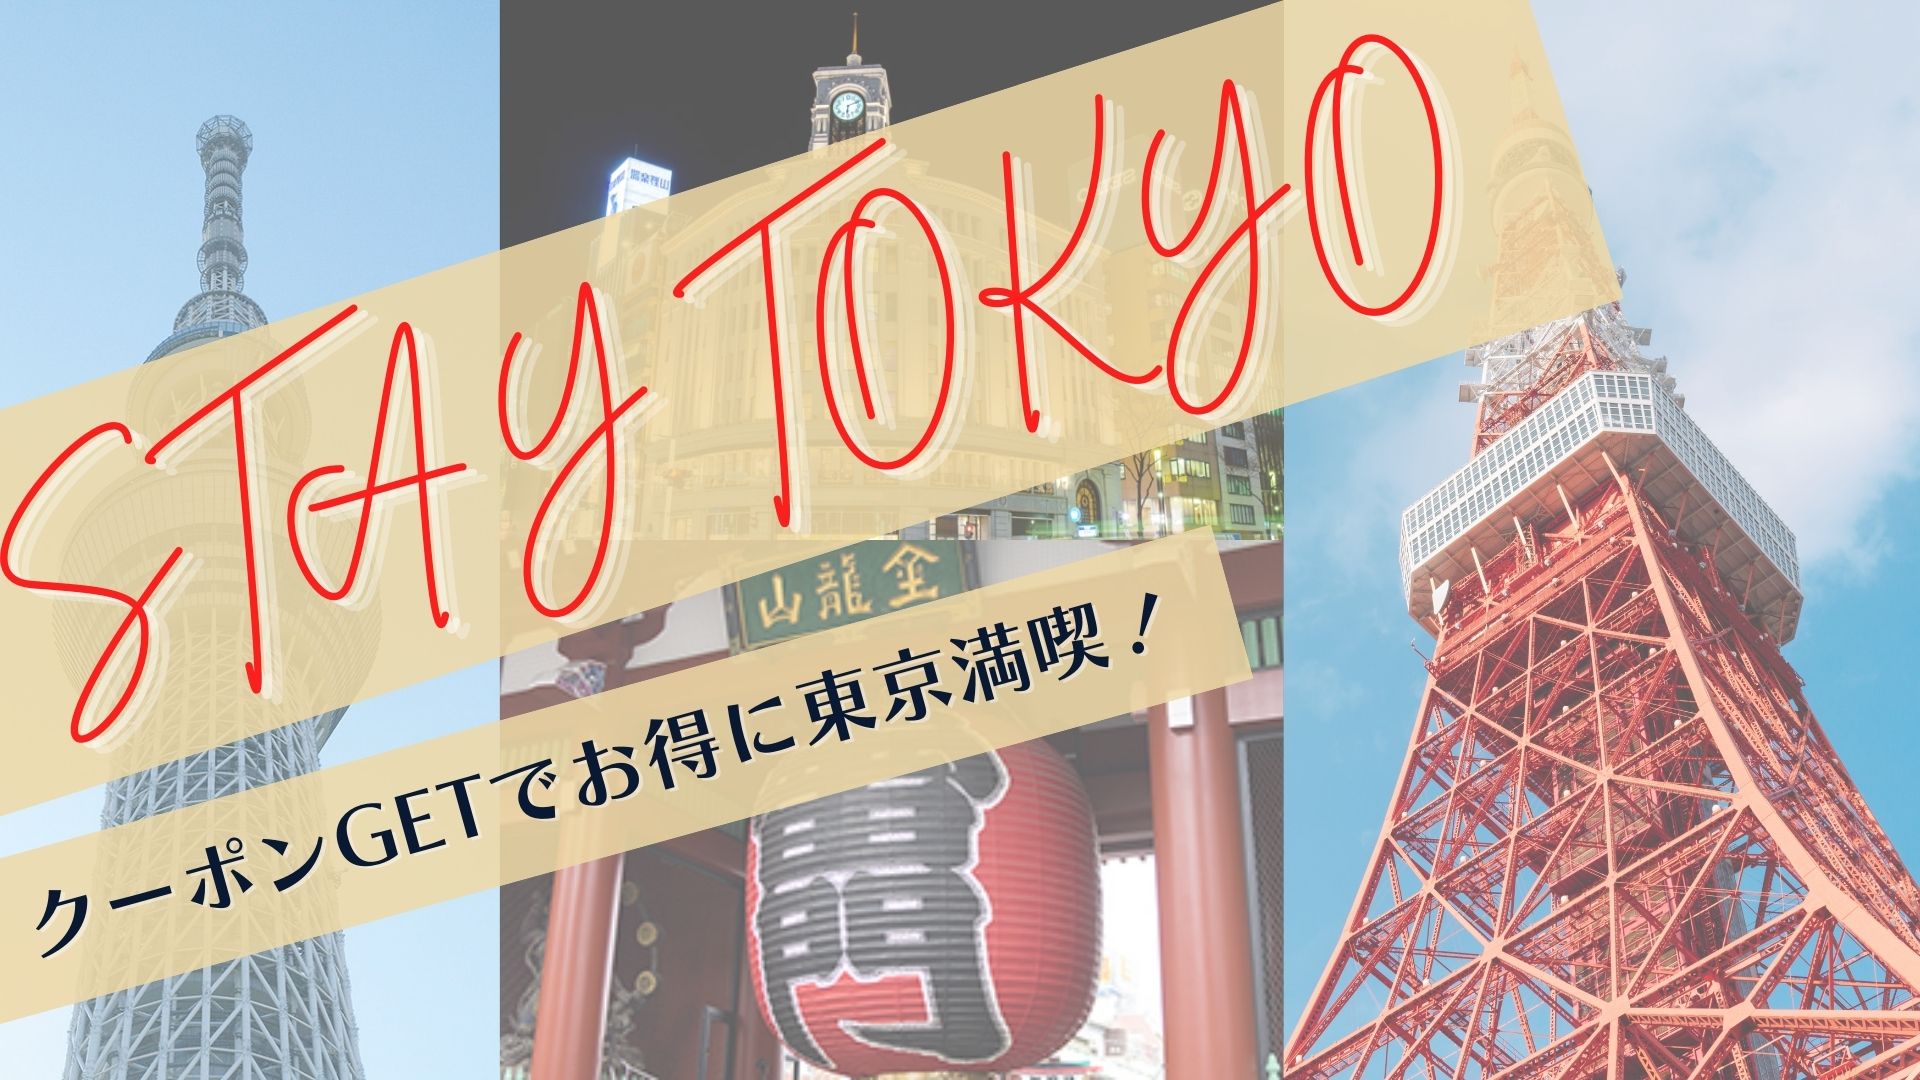 【公式会員限定】Stay Tokyo キャンペーン開始のお知らせ